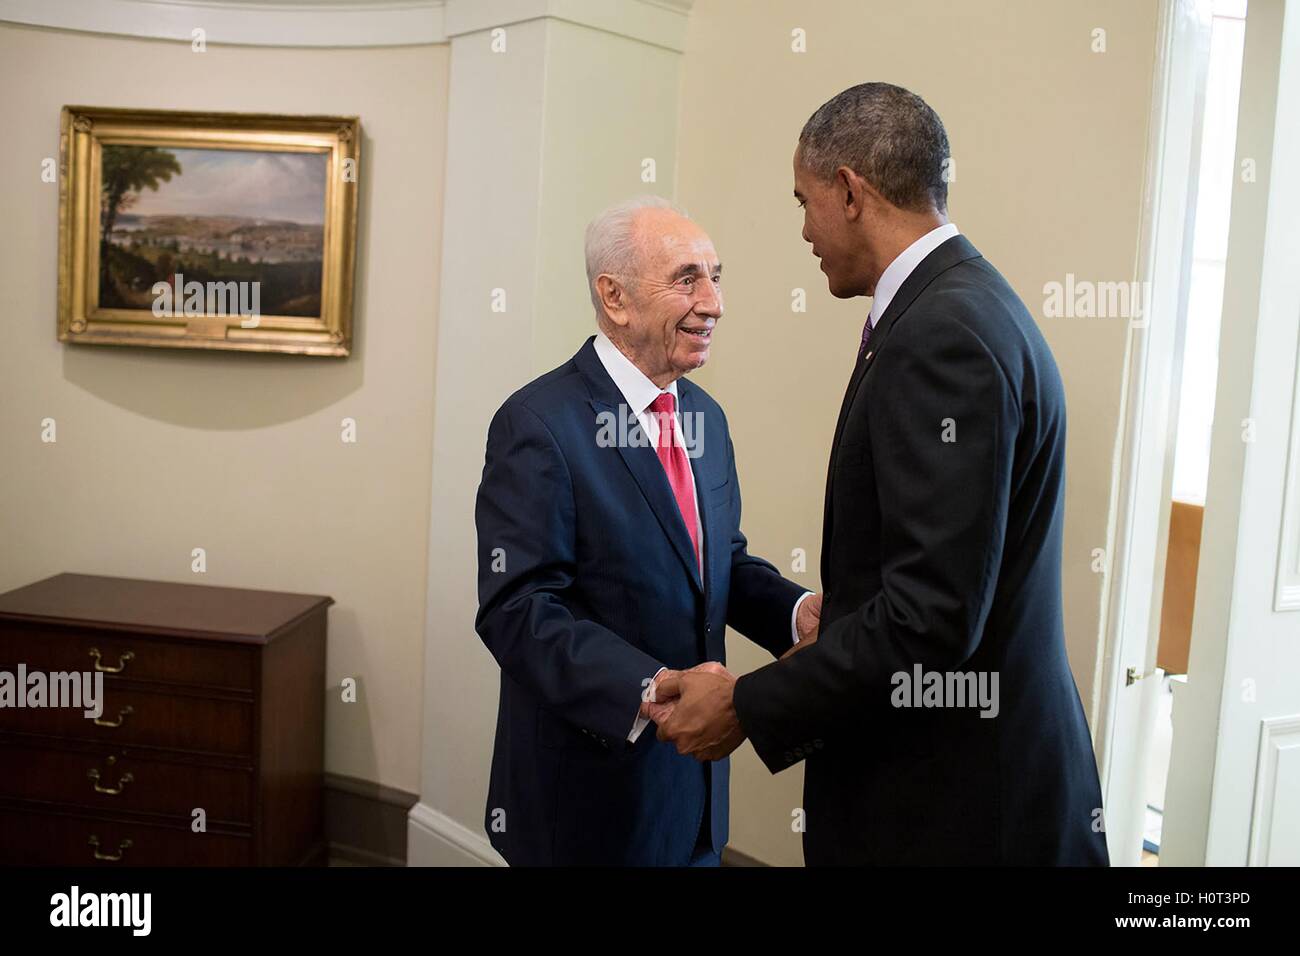 US-Präsident Barack Obama begrüßt den israelischen Präsidenten Shimon Peres außerhalb des weißen Hauses Oval Office 25. Juni 2014 in Washington, DC. Stockfoto